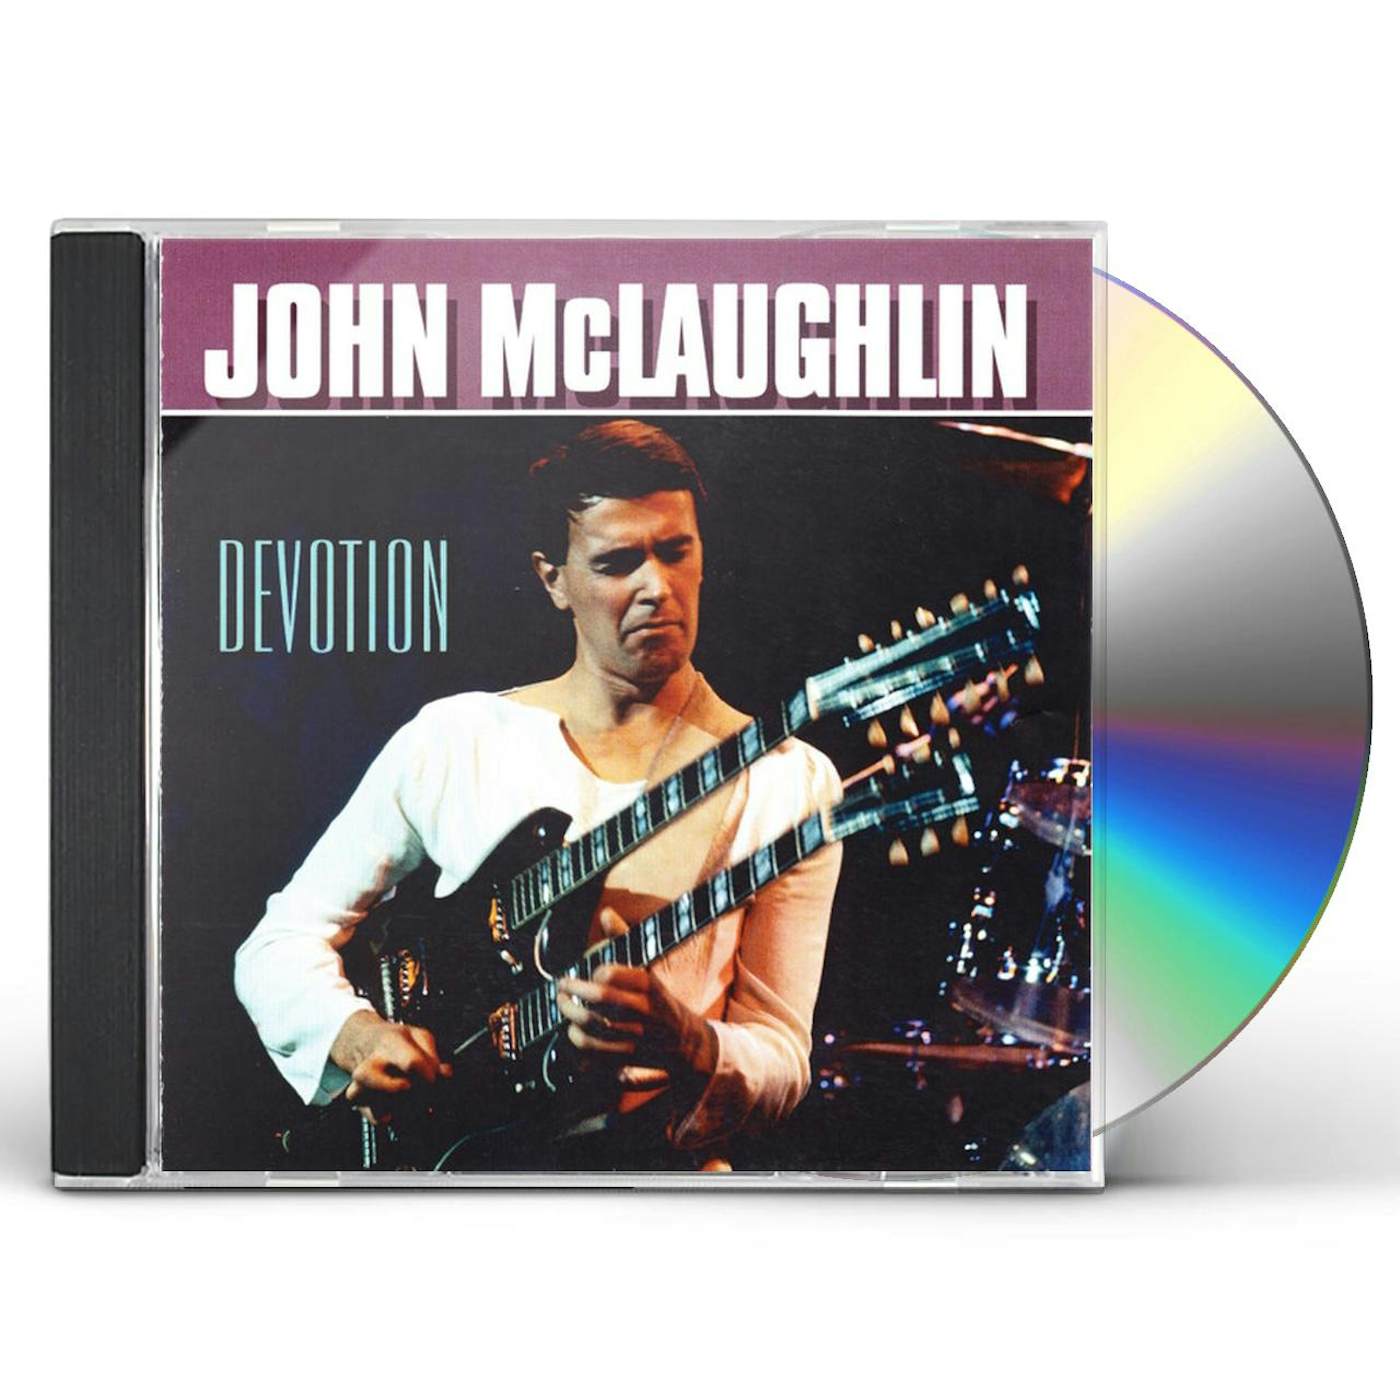 John McLaughlin DEVOTION CD